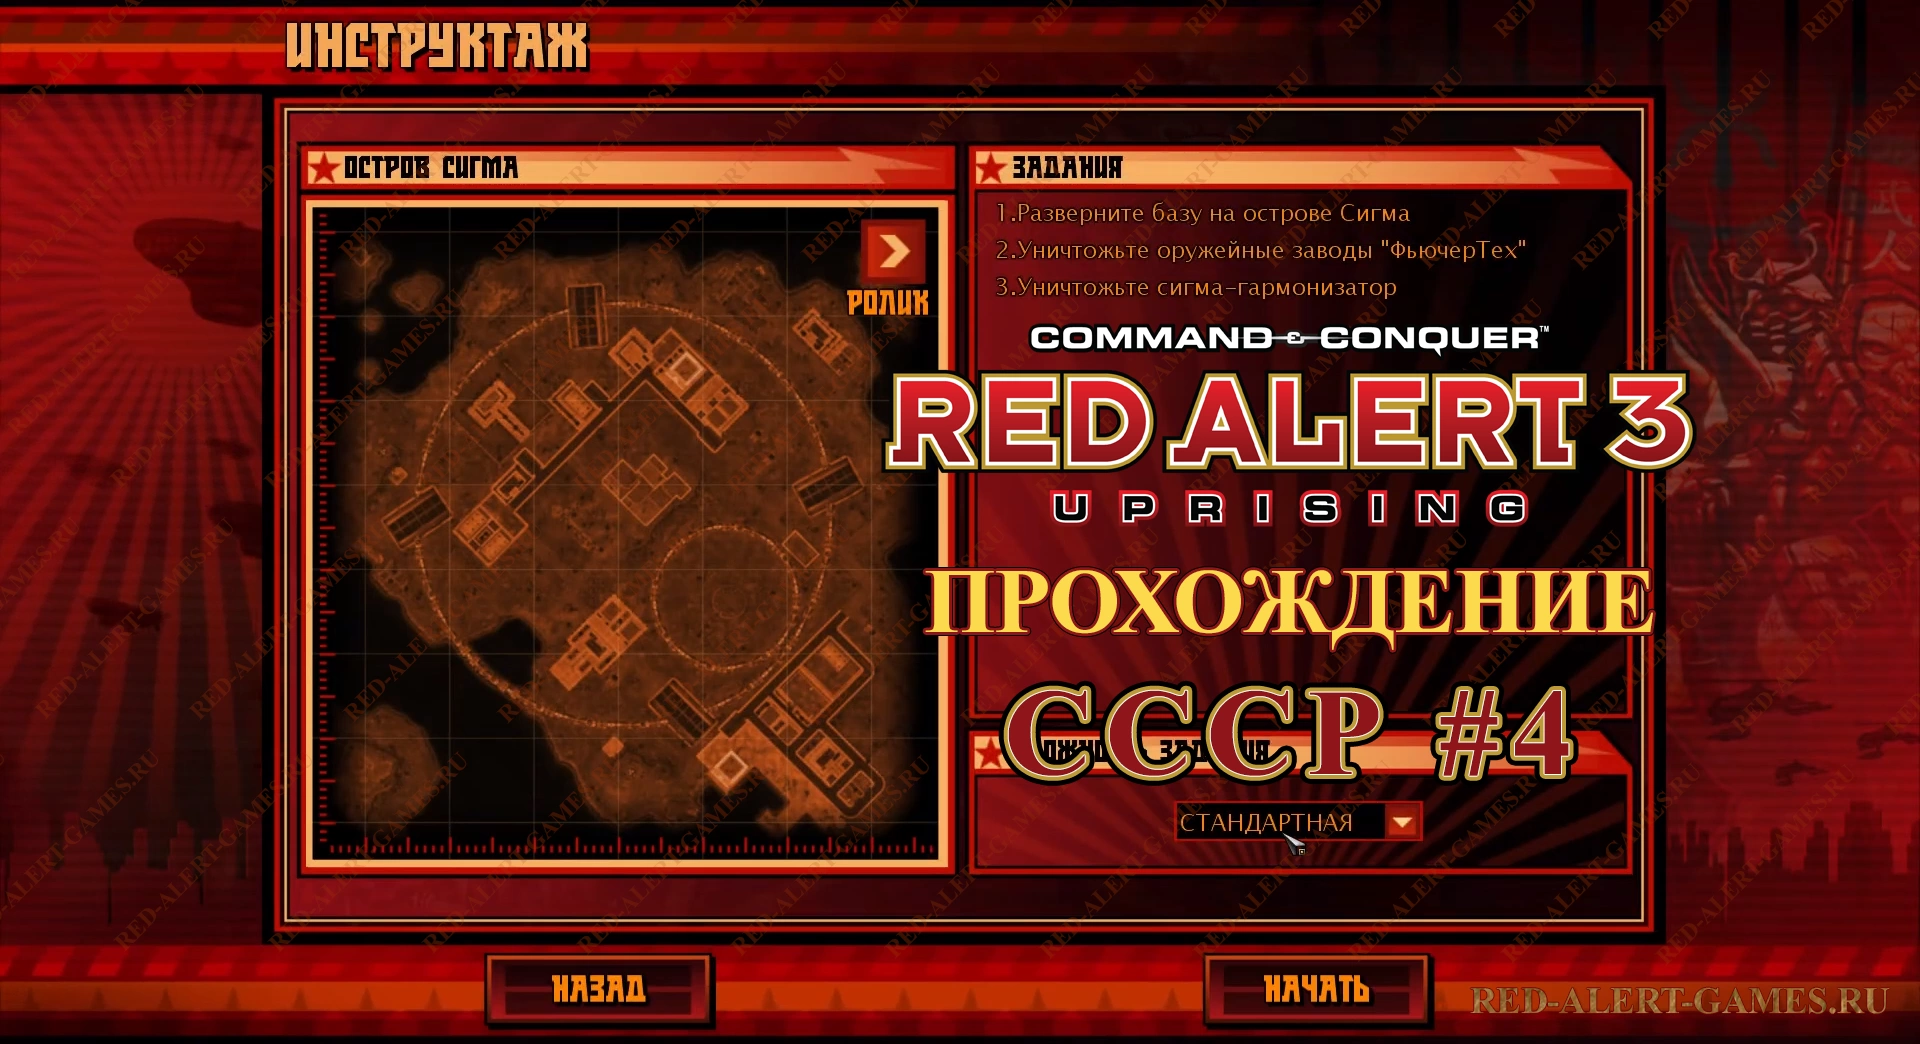 Red Alert 3 Uprising Прохождение СССР - Четвертая миссия